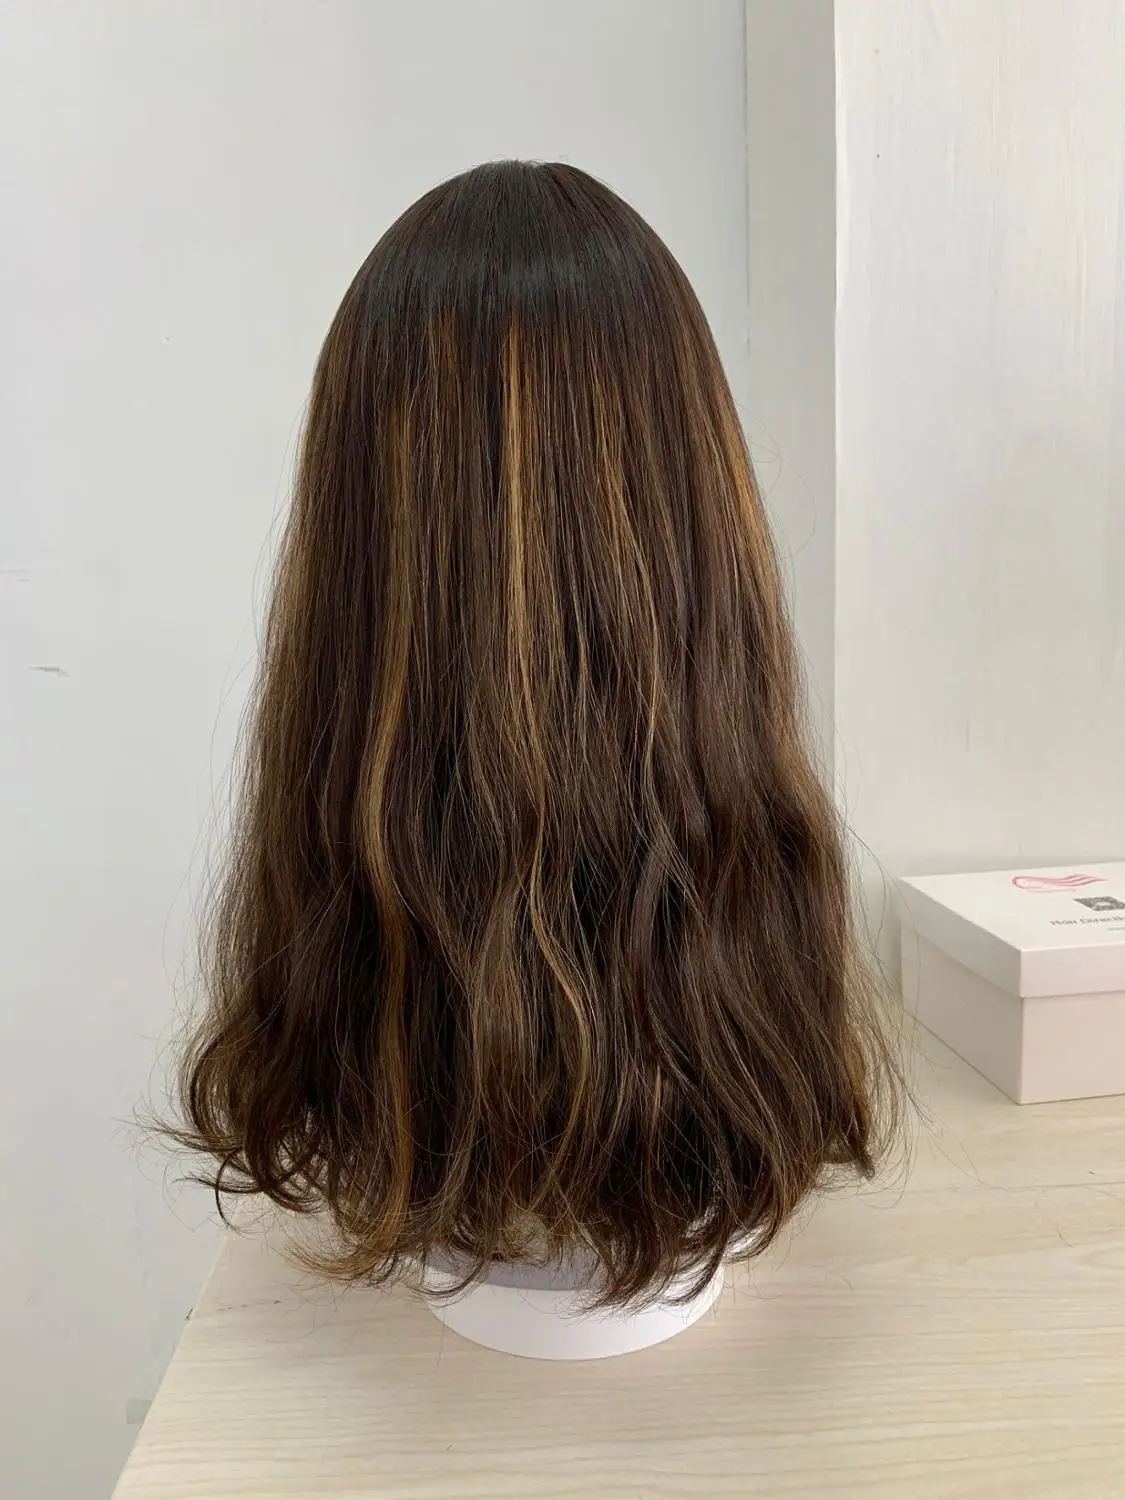 Tsingtaowigs заказ европейские натуральные волосы необработанные волосы 18 дюймов еврейский парик со шнуровкой спереди Best Sheitels парики - Цвет: same as picture